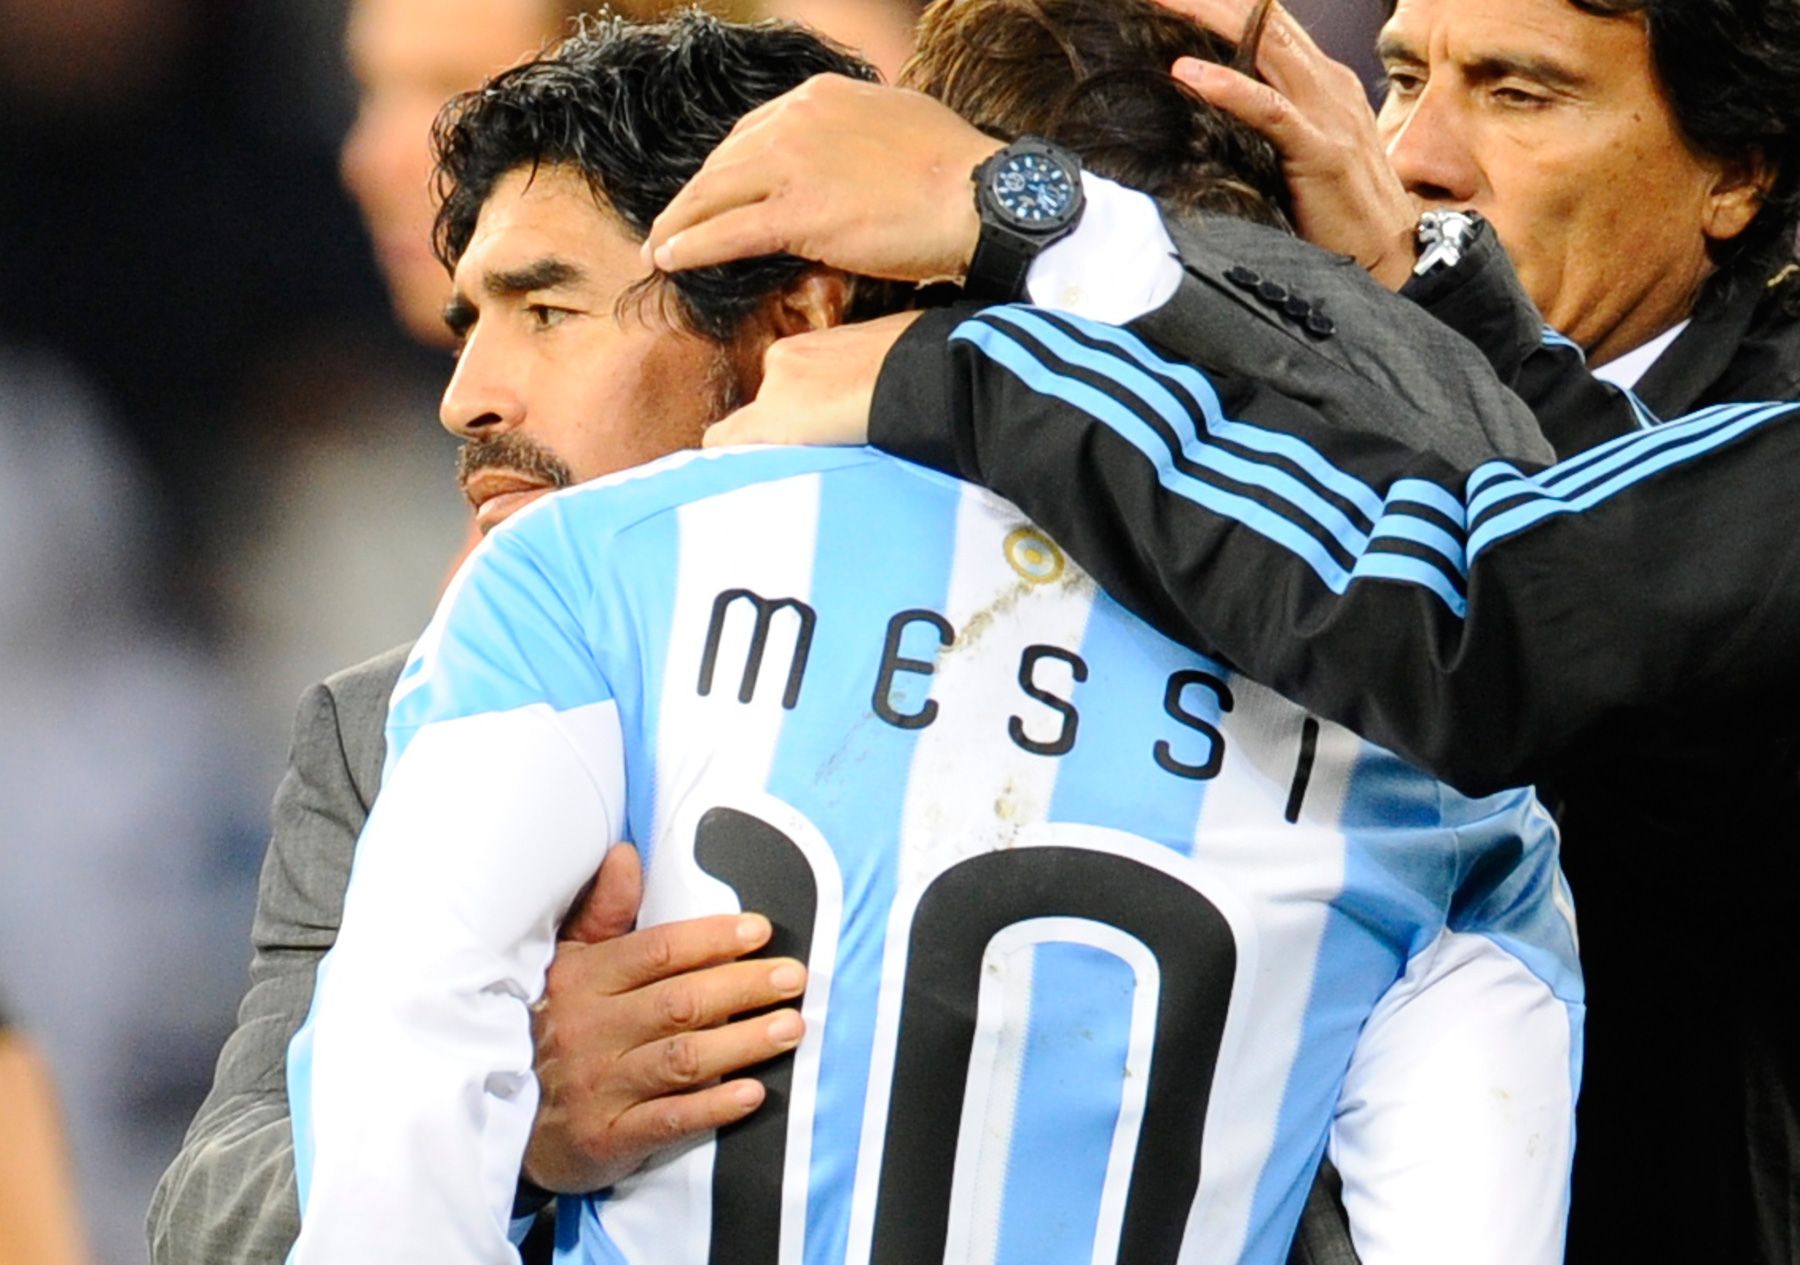 Maradona hughs to Messi after a defeat